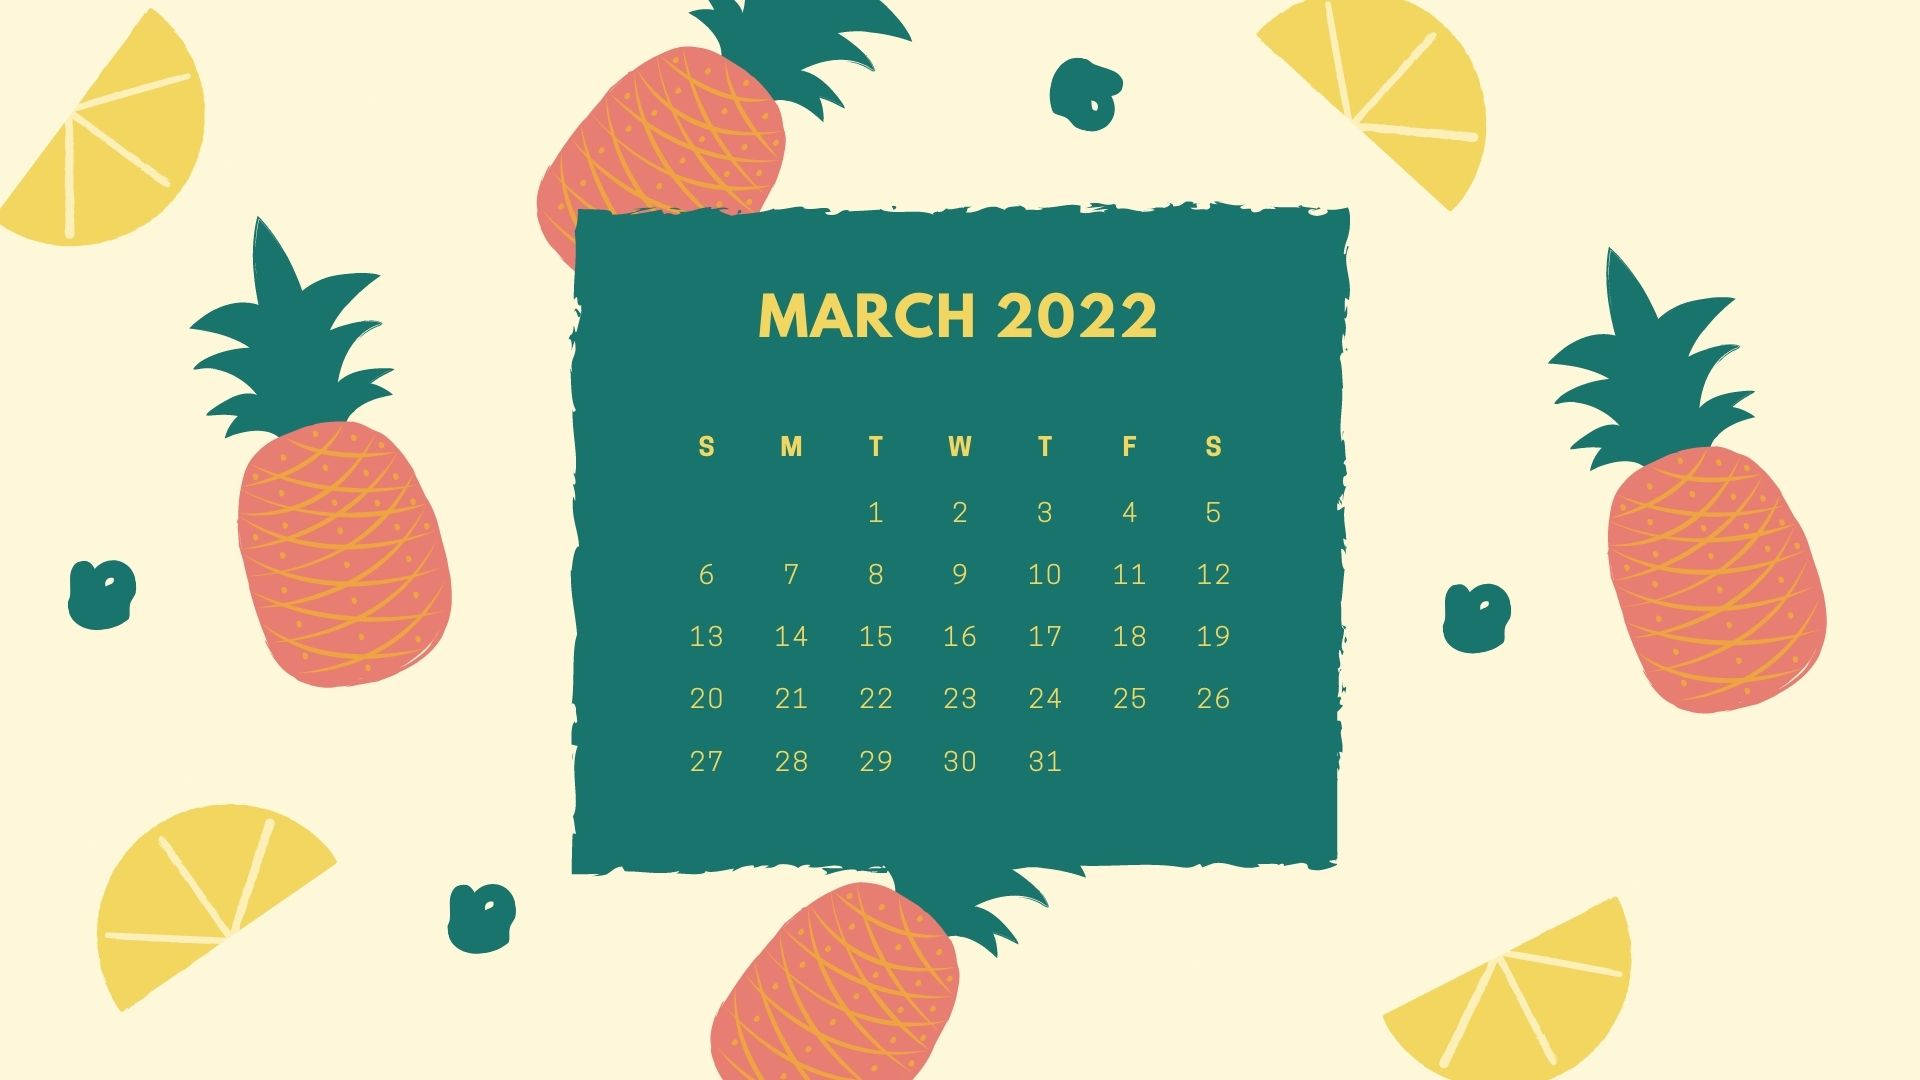 March 2022 Pineapple Calendar Wallpaper